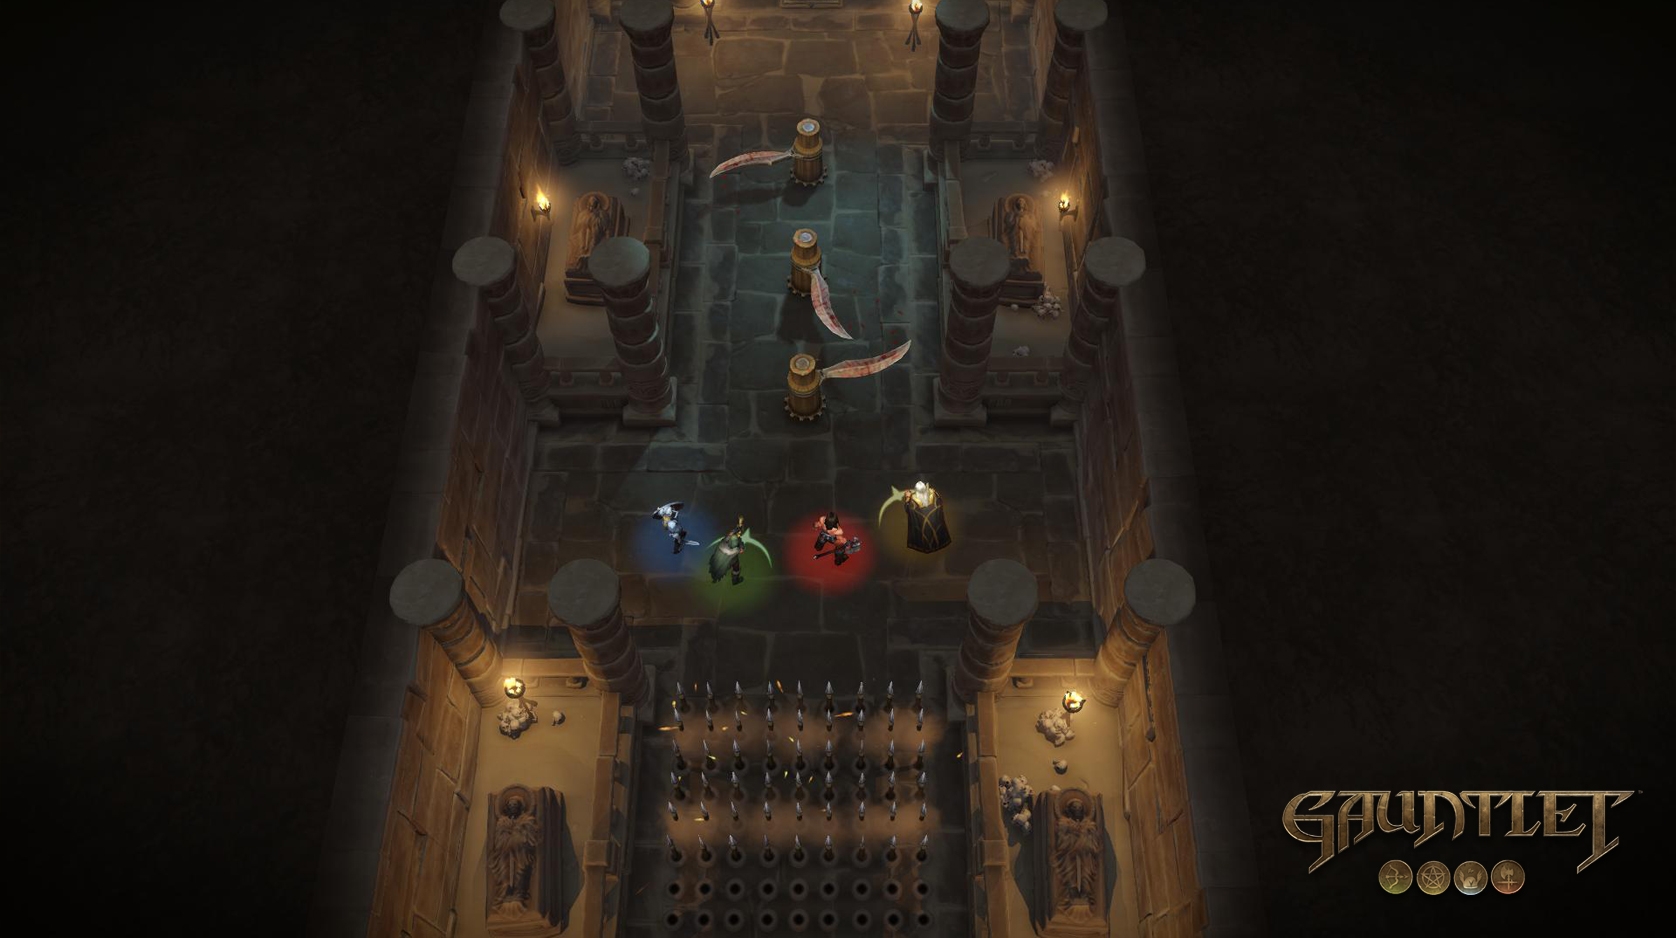 Скриншот из игры Gauntlet под номером 10